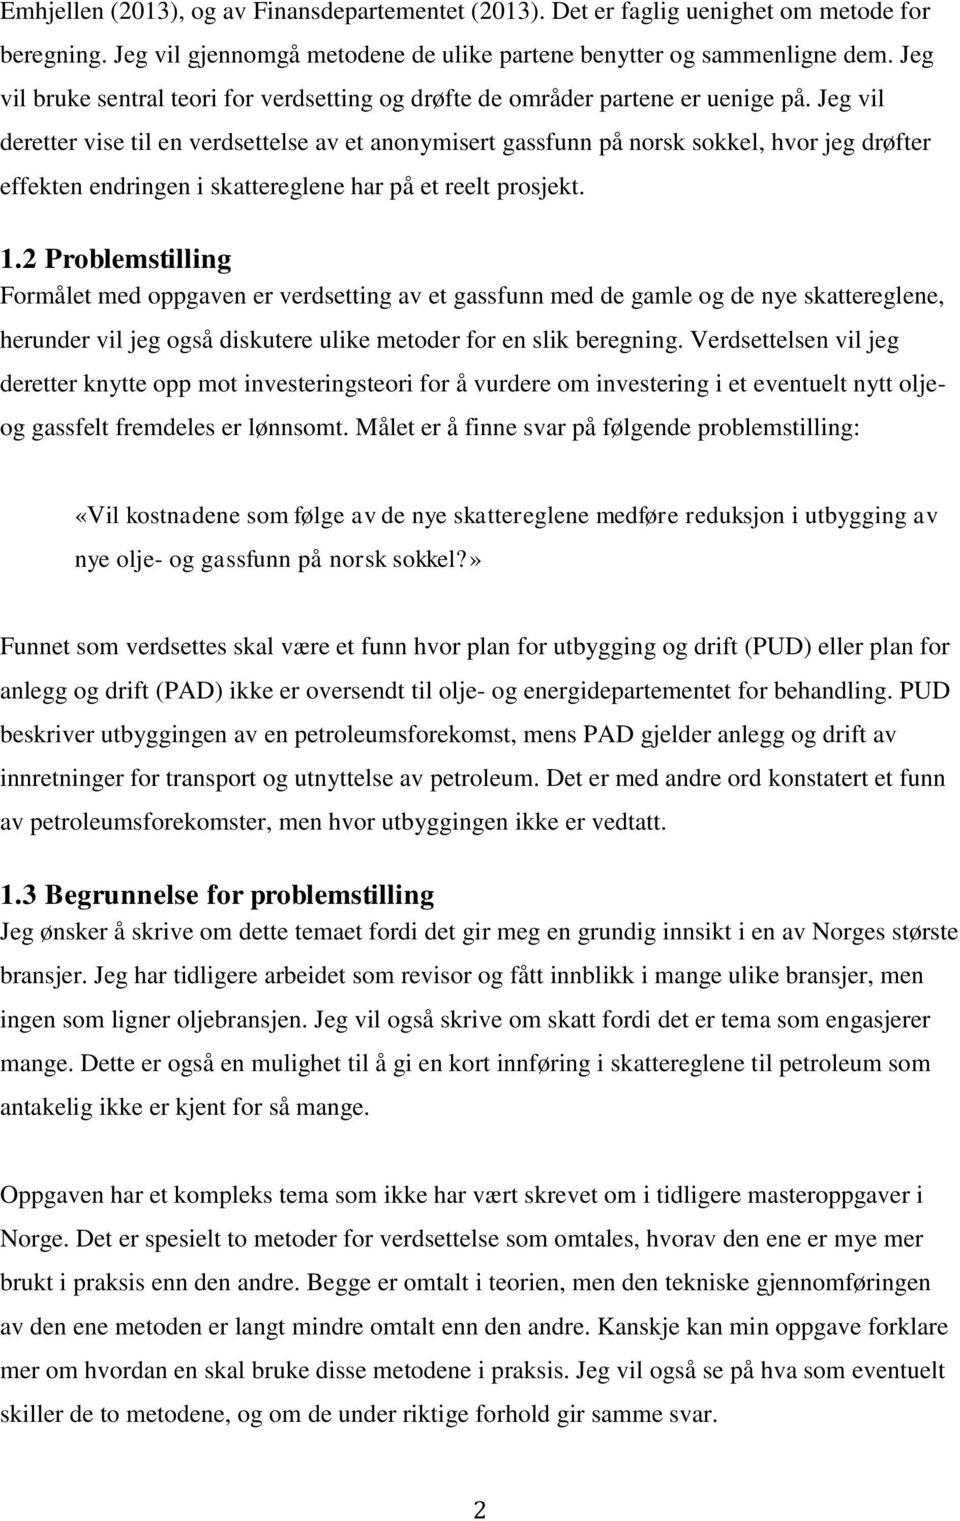 Jeg vil deretter vise til en verdsettelse av et anonymisert gassfunn på norsk sokkel, hvor jeg drøfter effekten endringen i skattereglene har på et reelt prosjekt. 1.